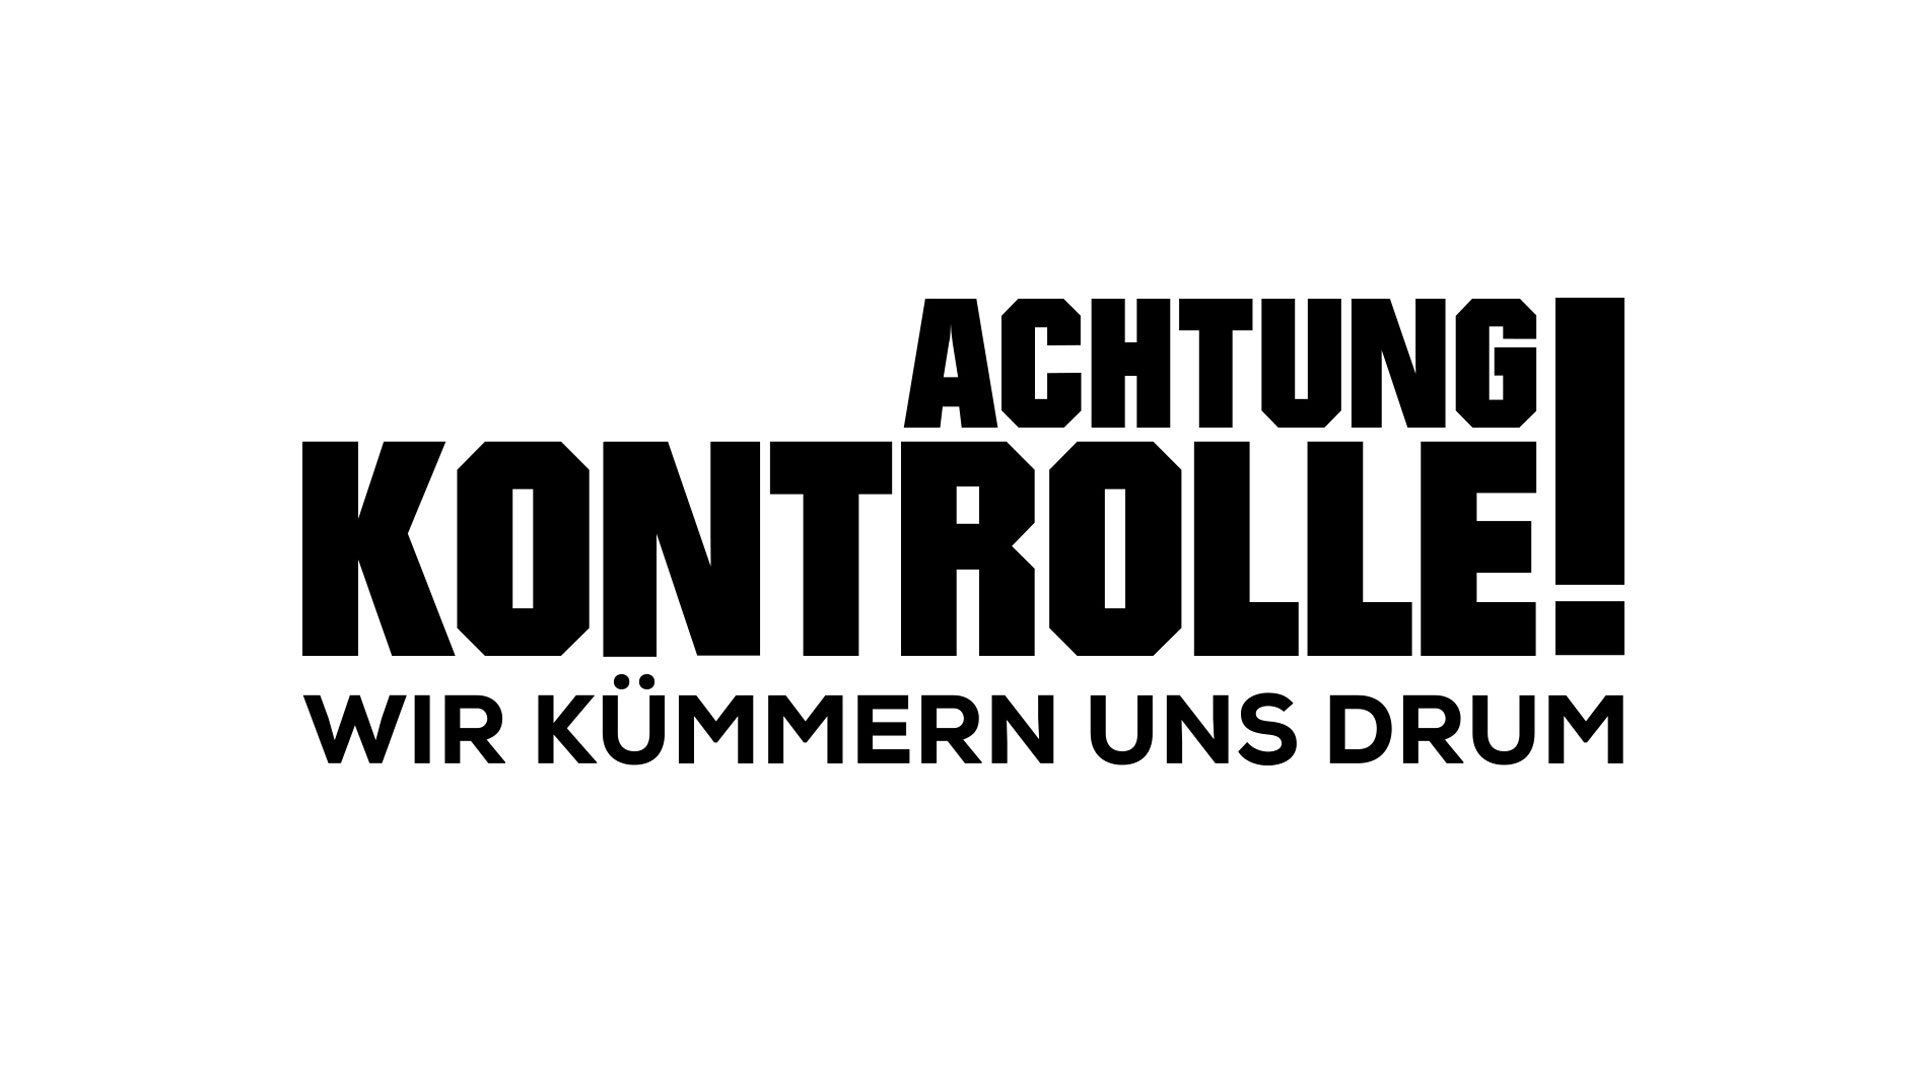 Verdächtige Substanzen bei Fahrzeugkontrolle - Bundespolizei Bad Bramstedt